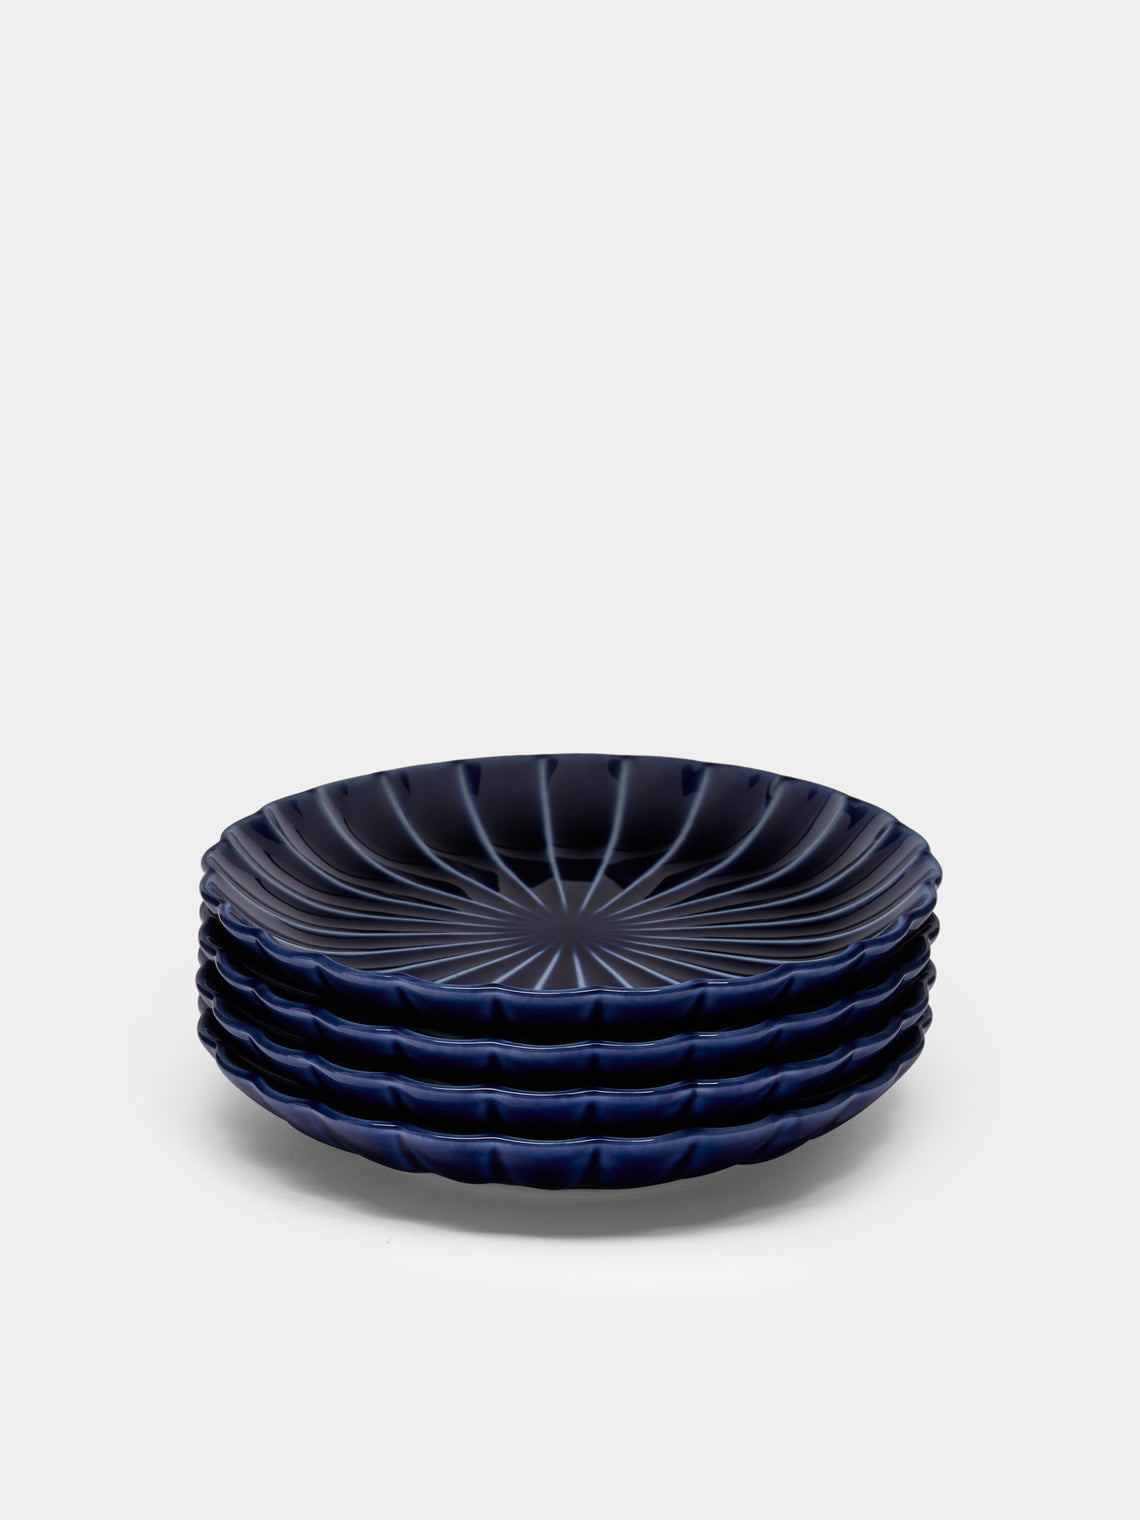 Kaneko Kohyo - Giyaman Urushi Ceramic Saucers (Set of 4) - Blue - ABASK